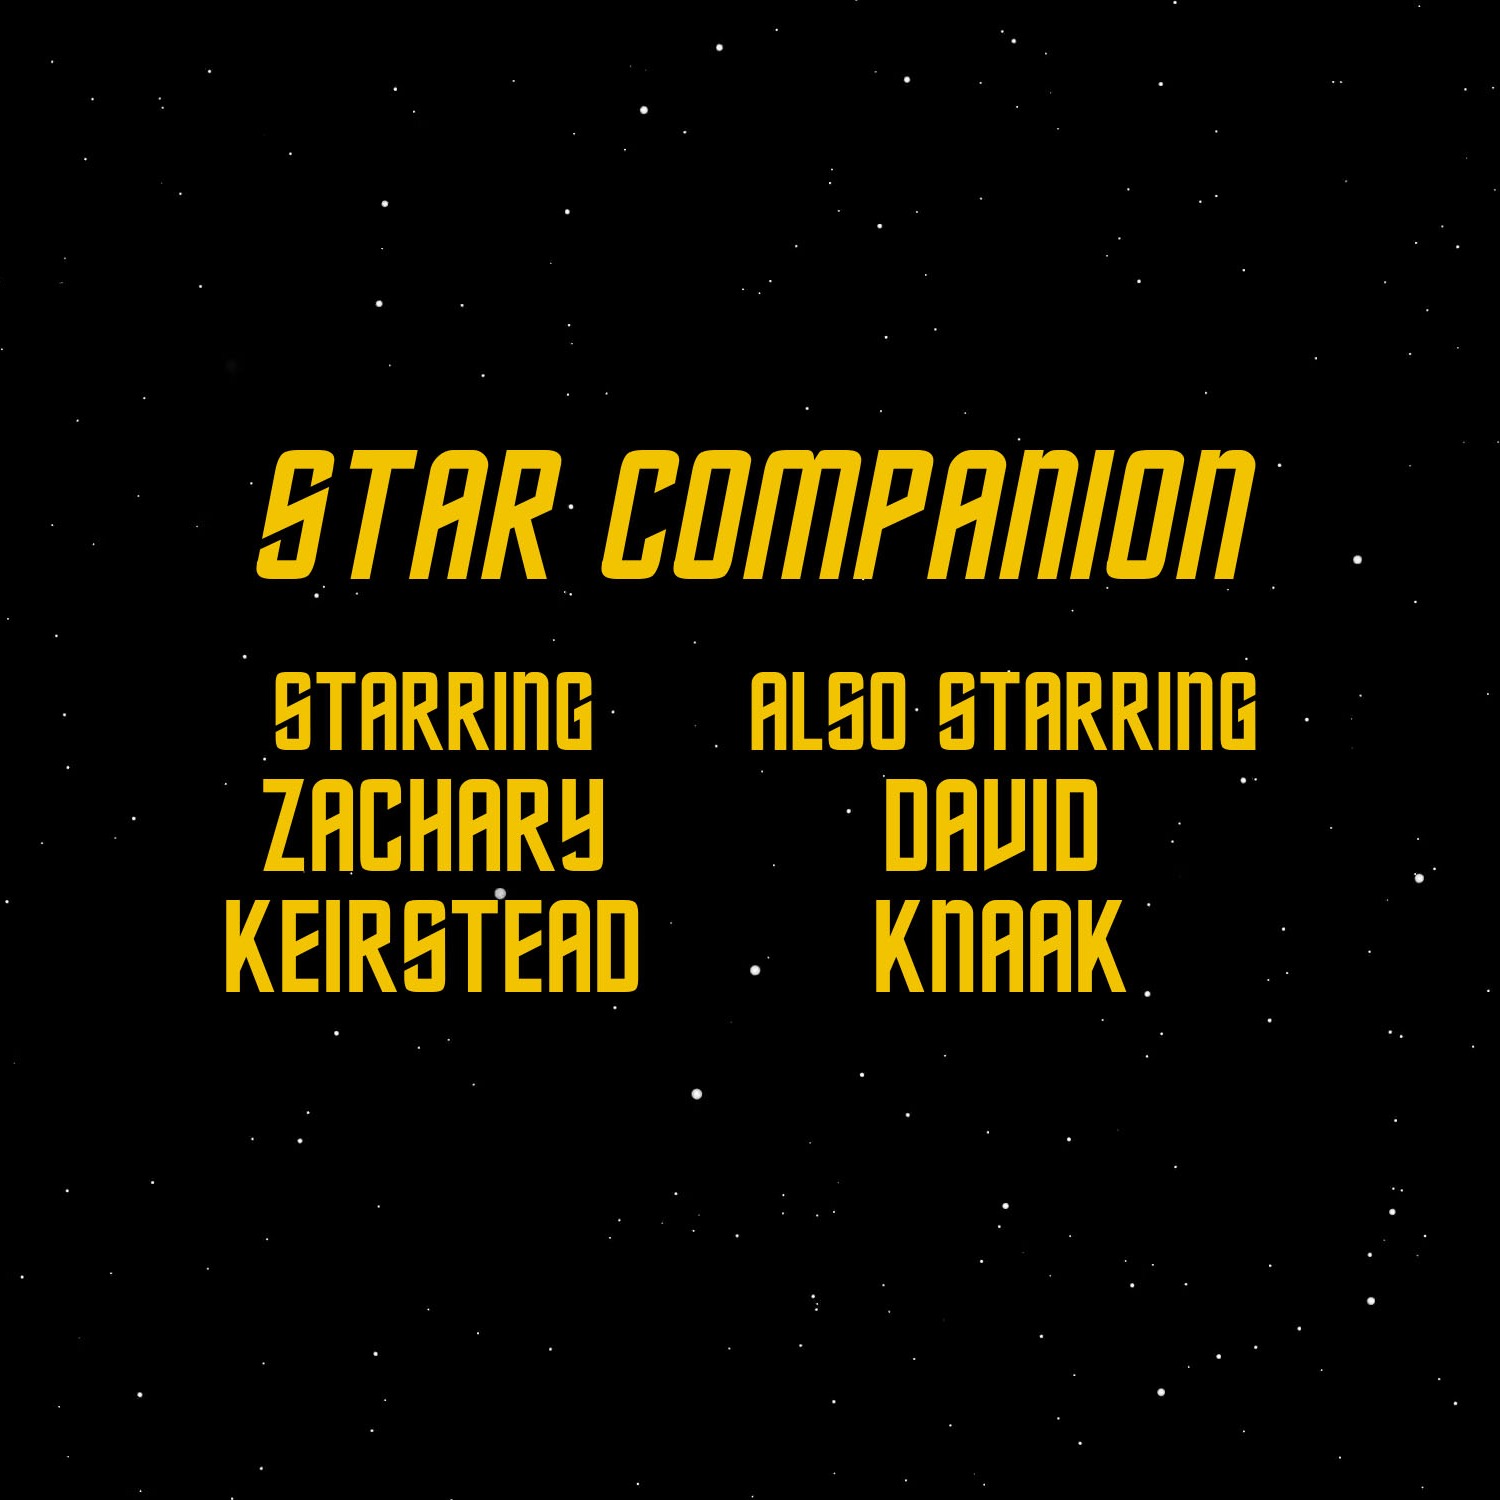 cover art for Star Trek Enterprise: Episode 1 and 2 "Broken Bow"